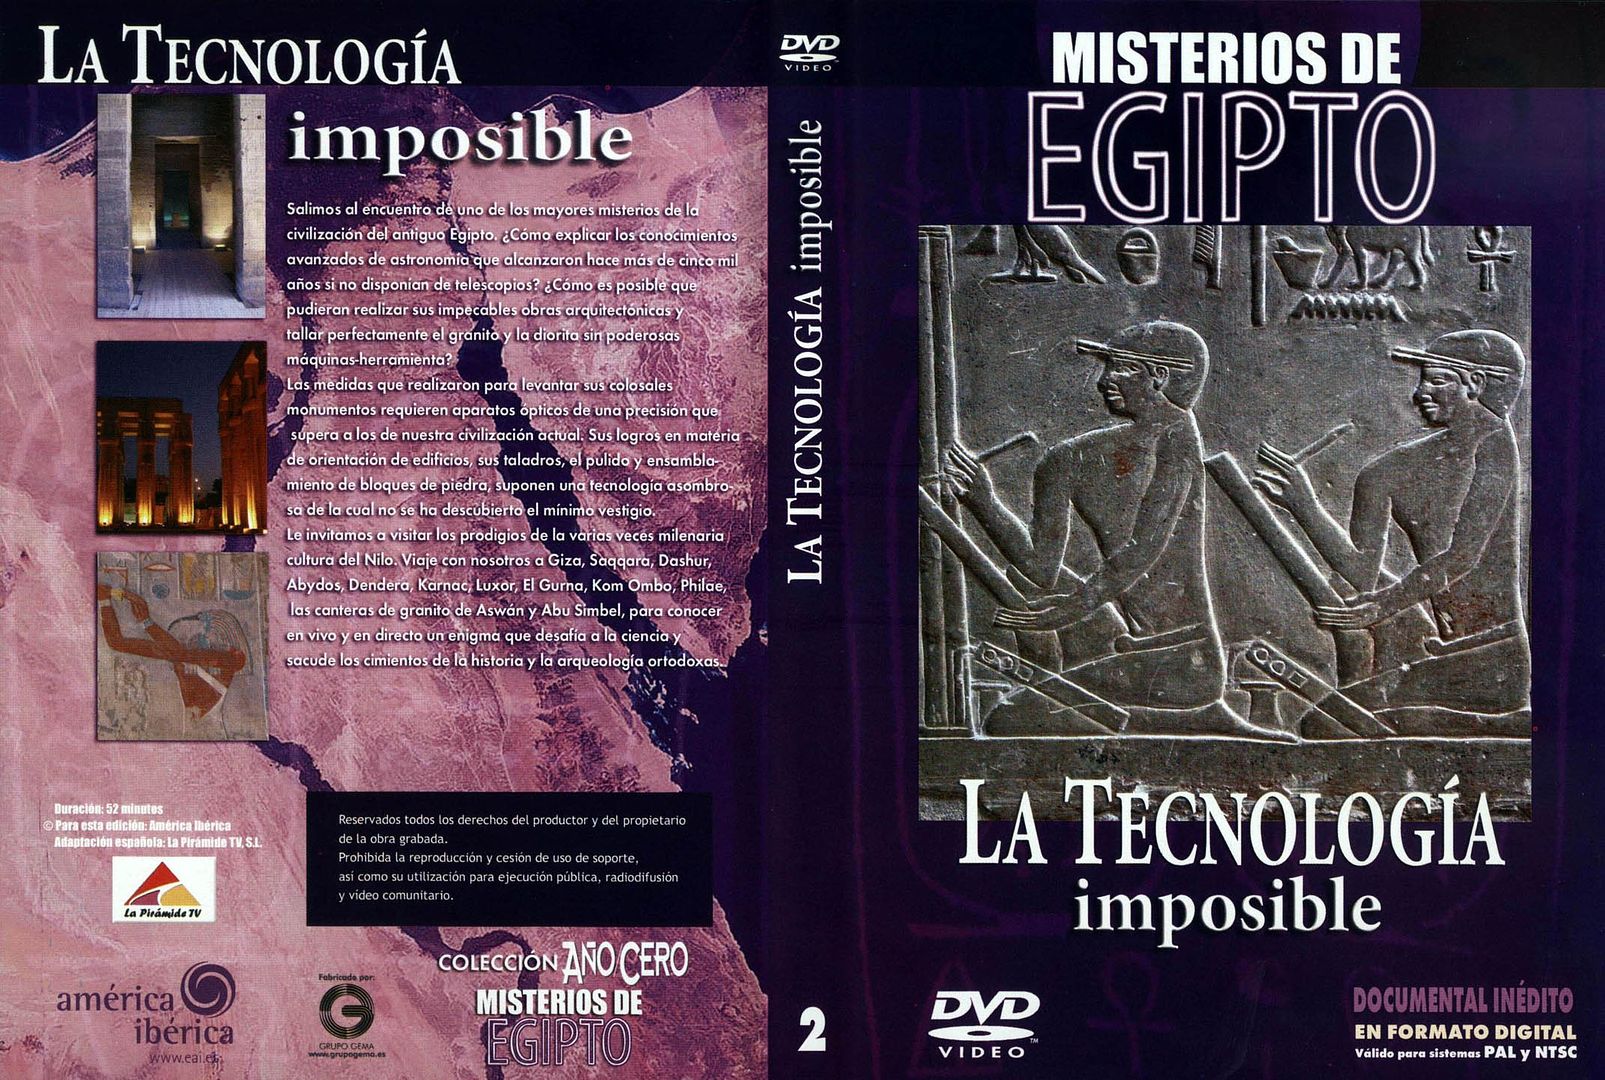 Misterios De Egipto 2 La Tecnologia Imposible Caratula - Egipto tecnologia imposible